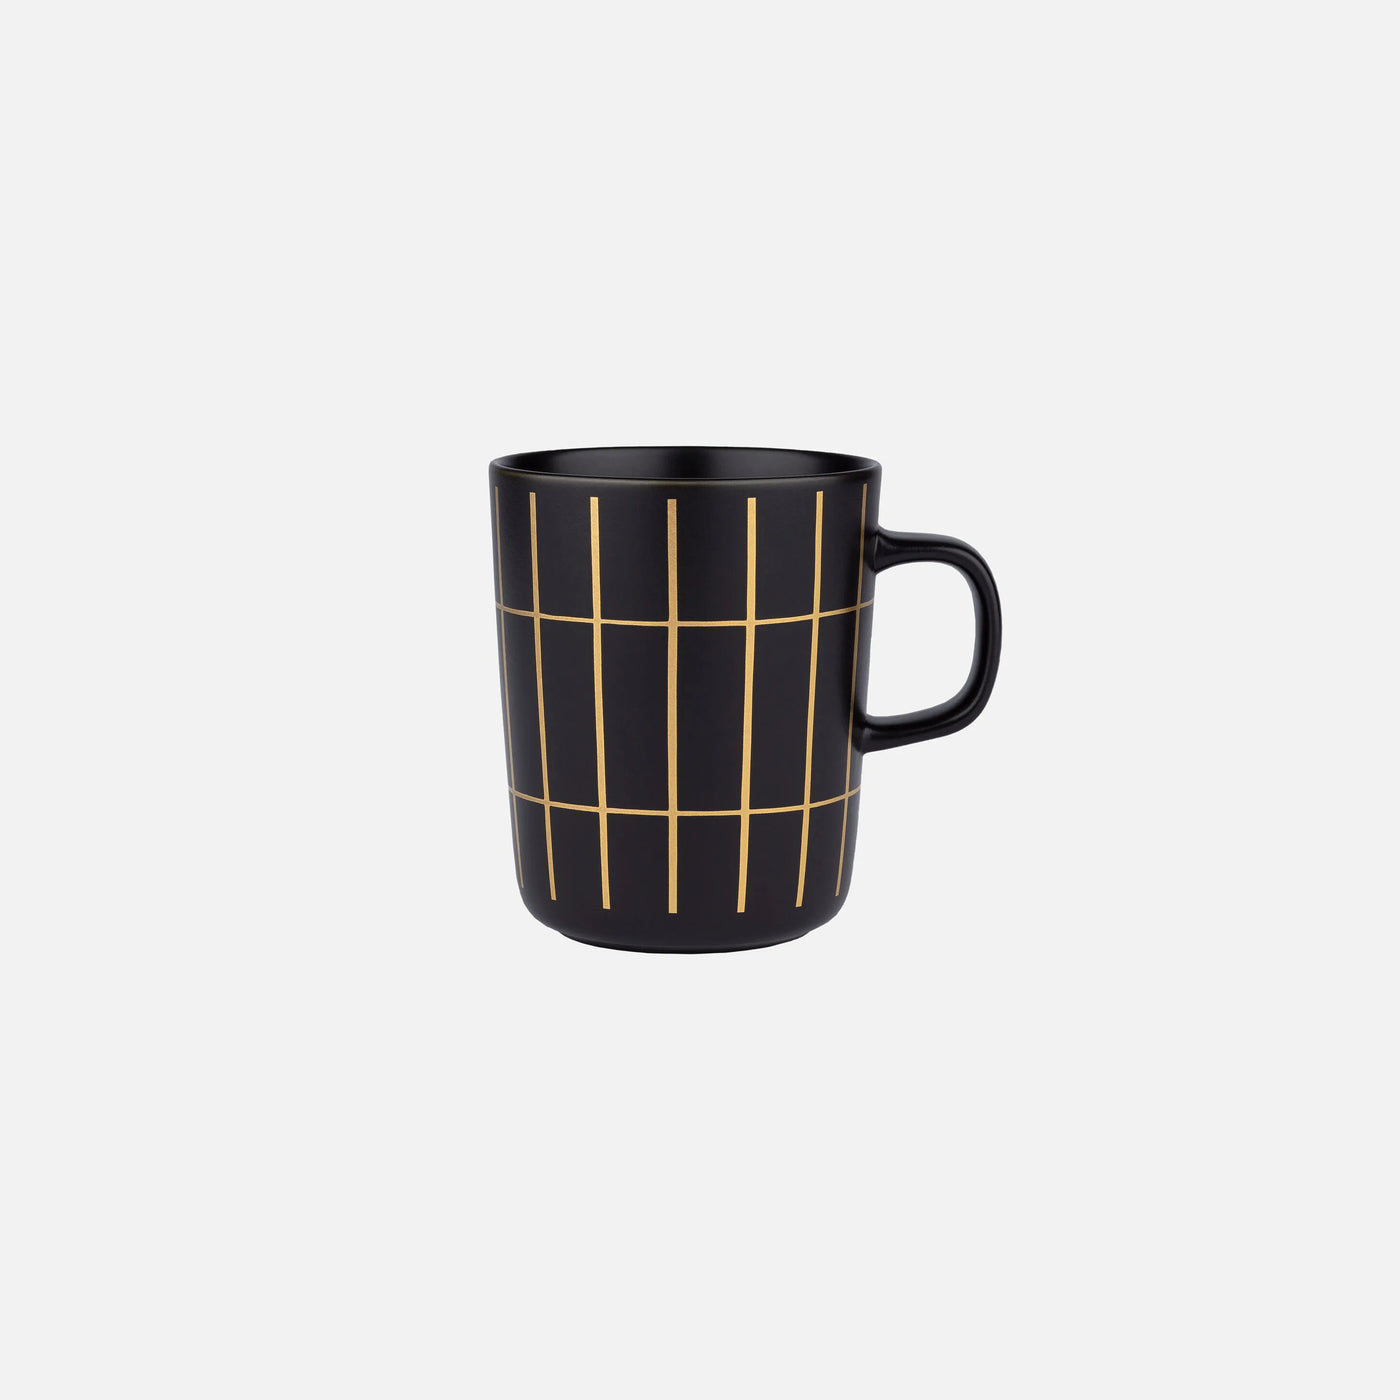 Oiva / Tiiliskivi Mug 2,5 Dl - Black